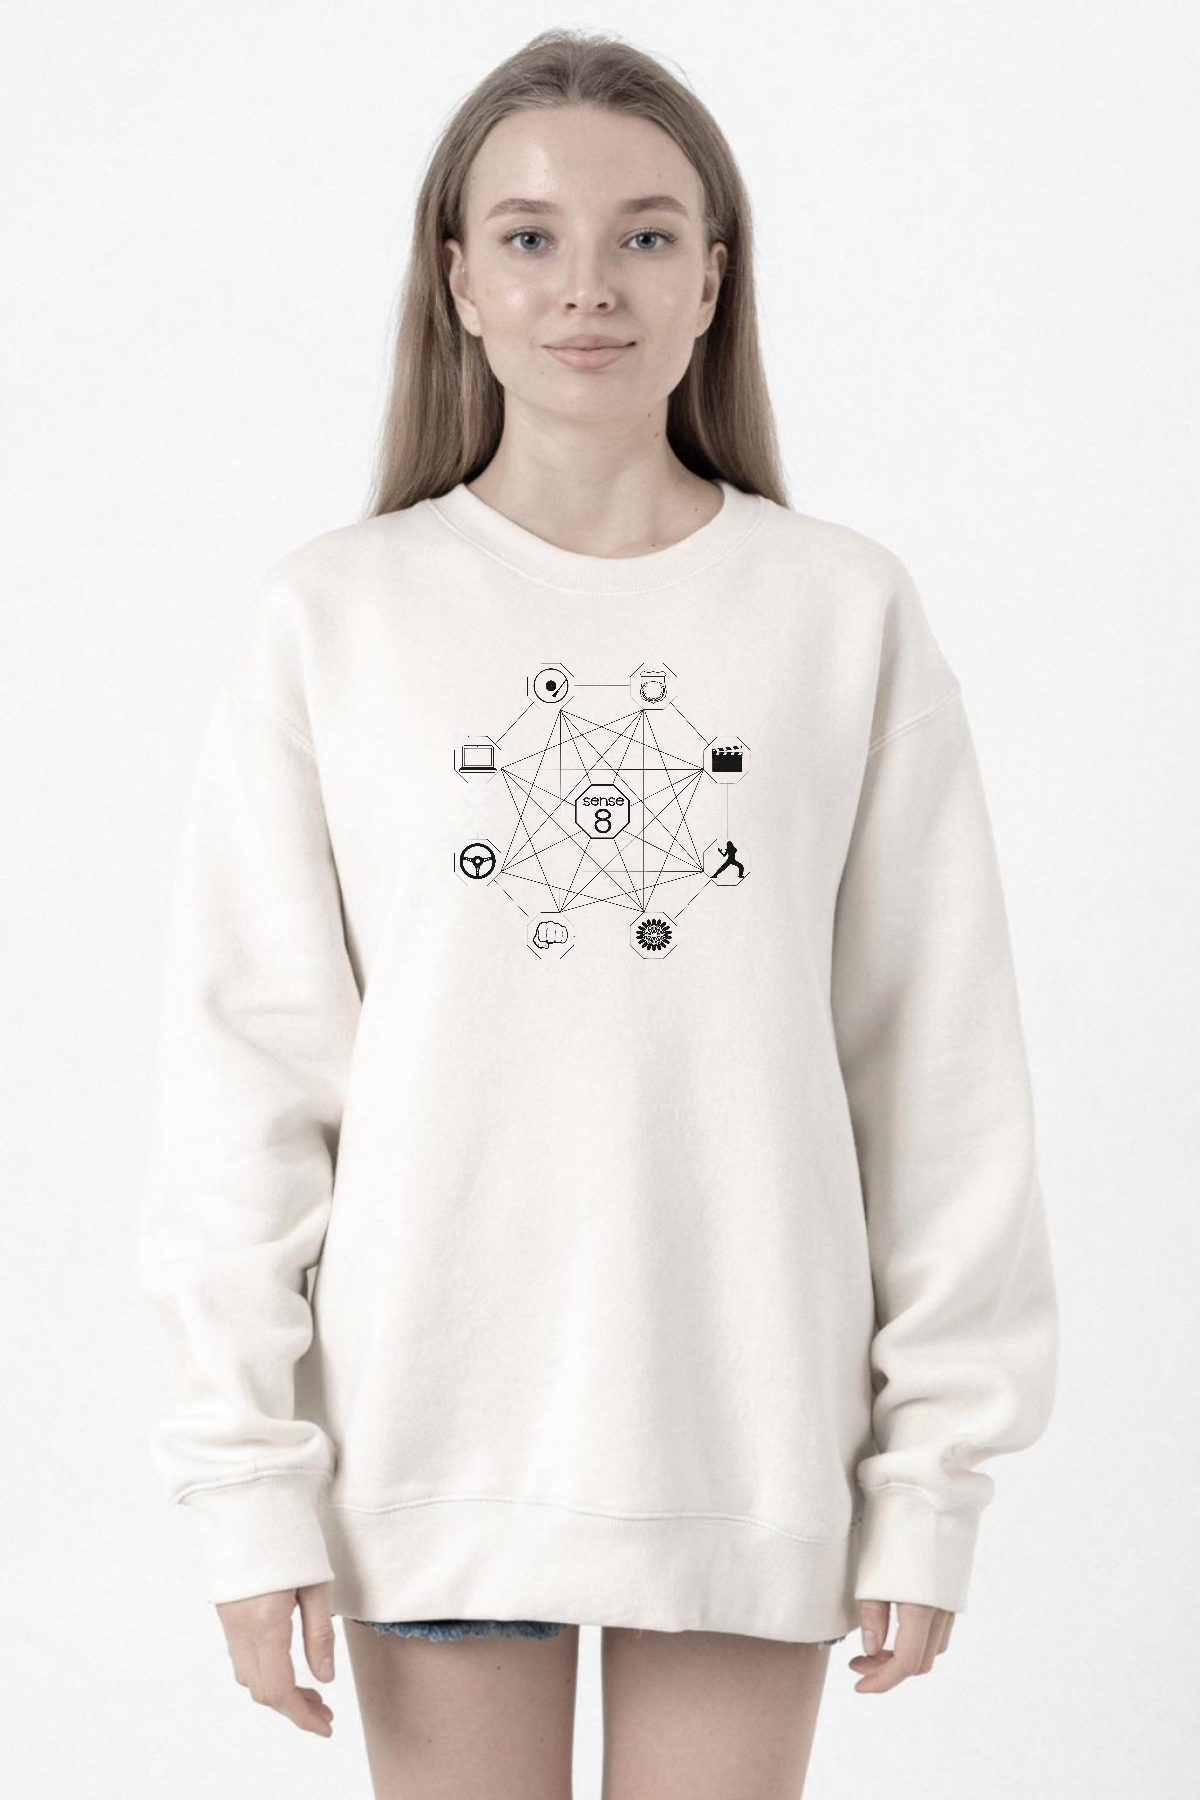 Sense8 Sensates Cluster Beyaz Kadın 2ip Sweatshirt